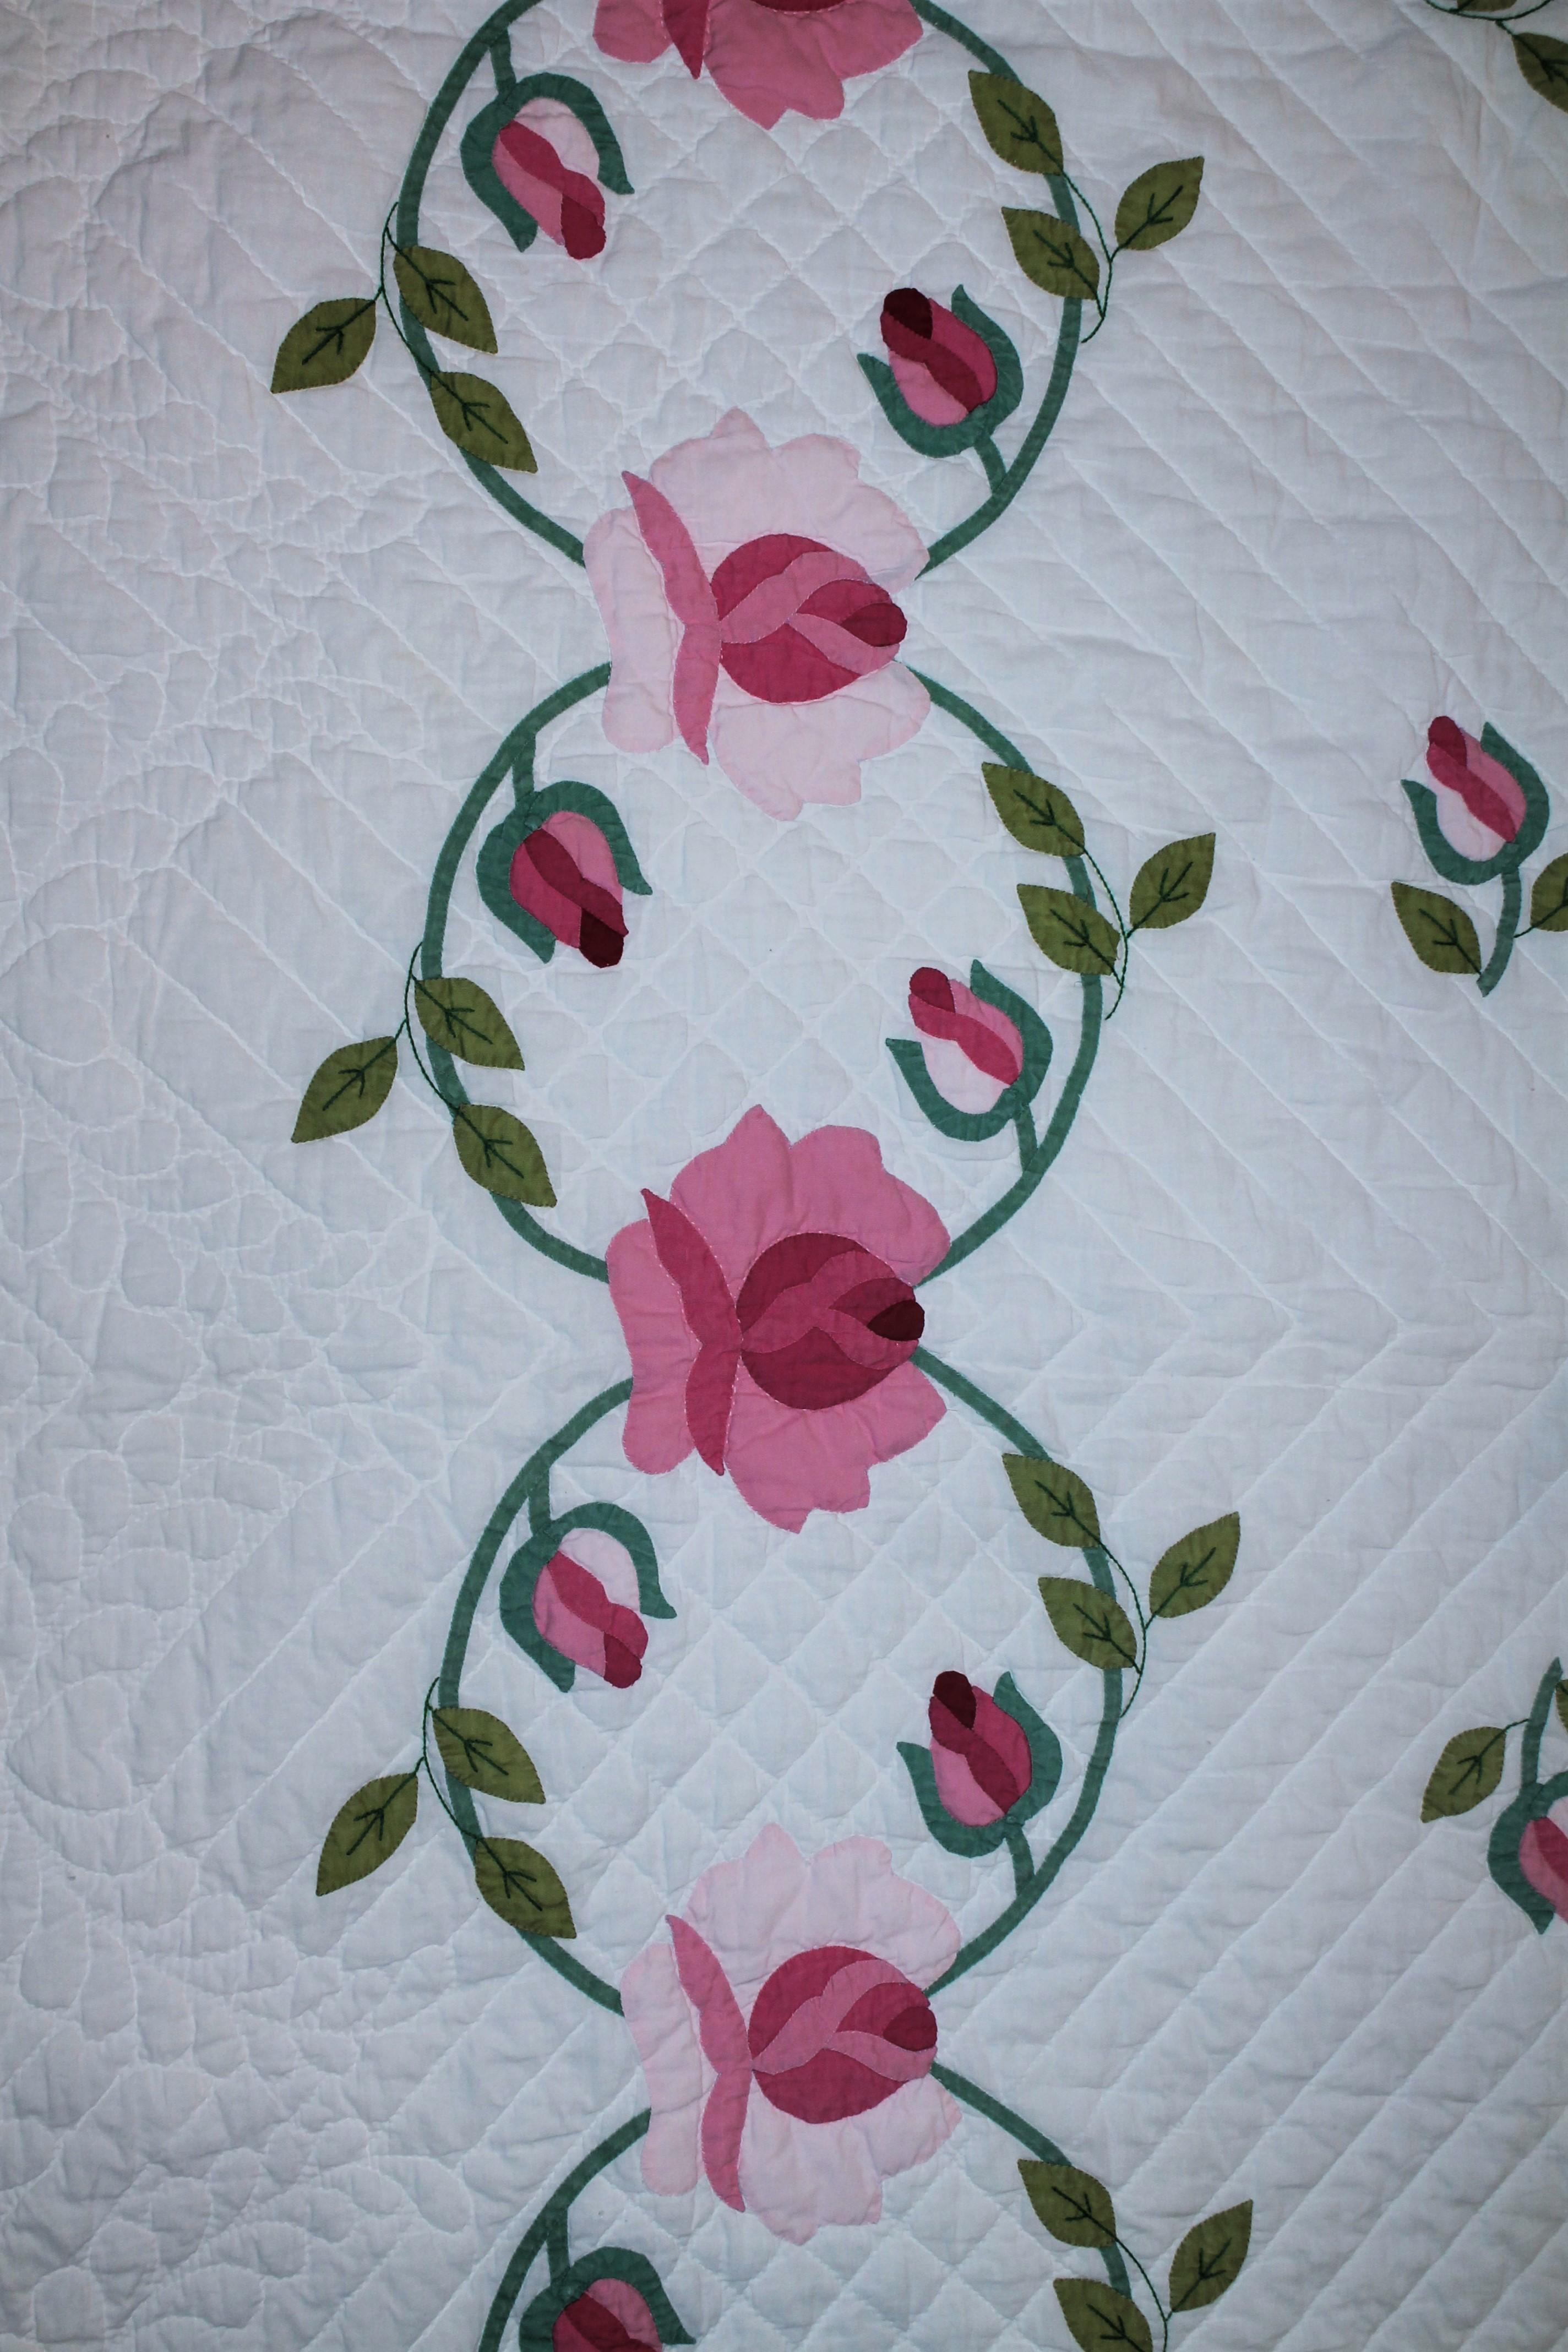 ohio rose quilt pattern